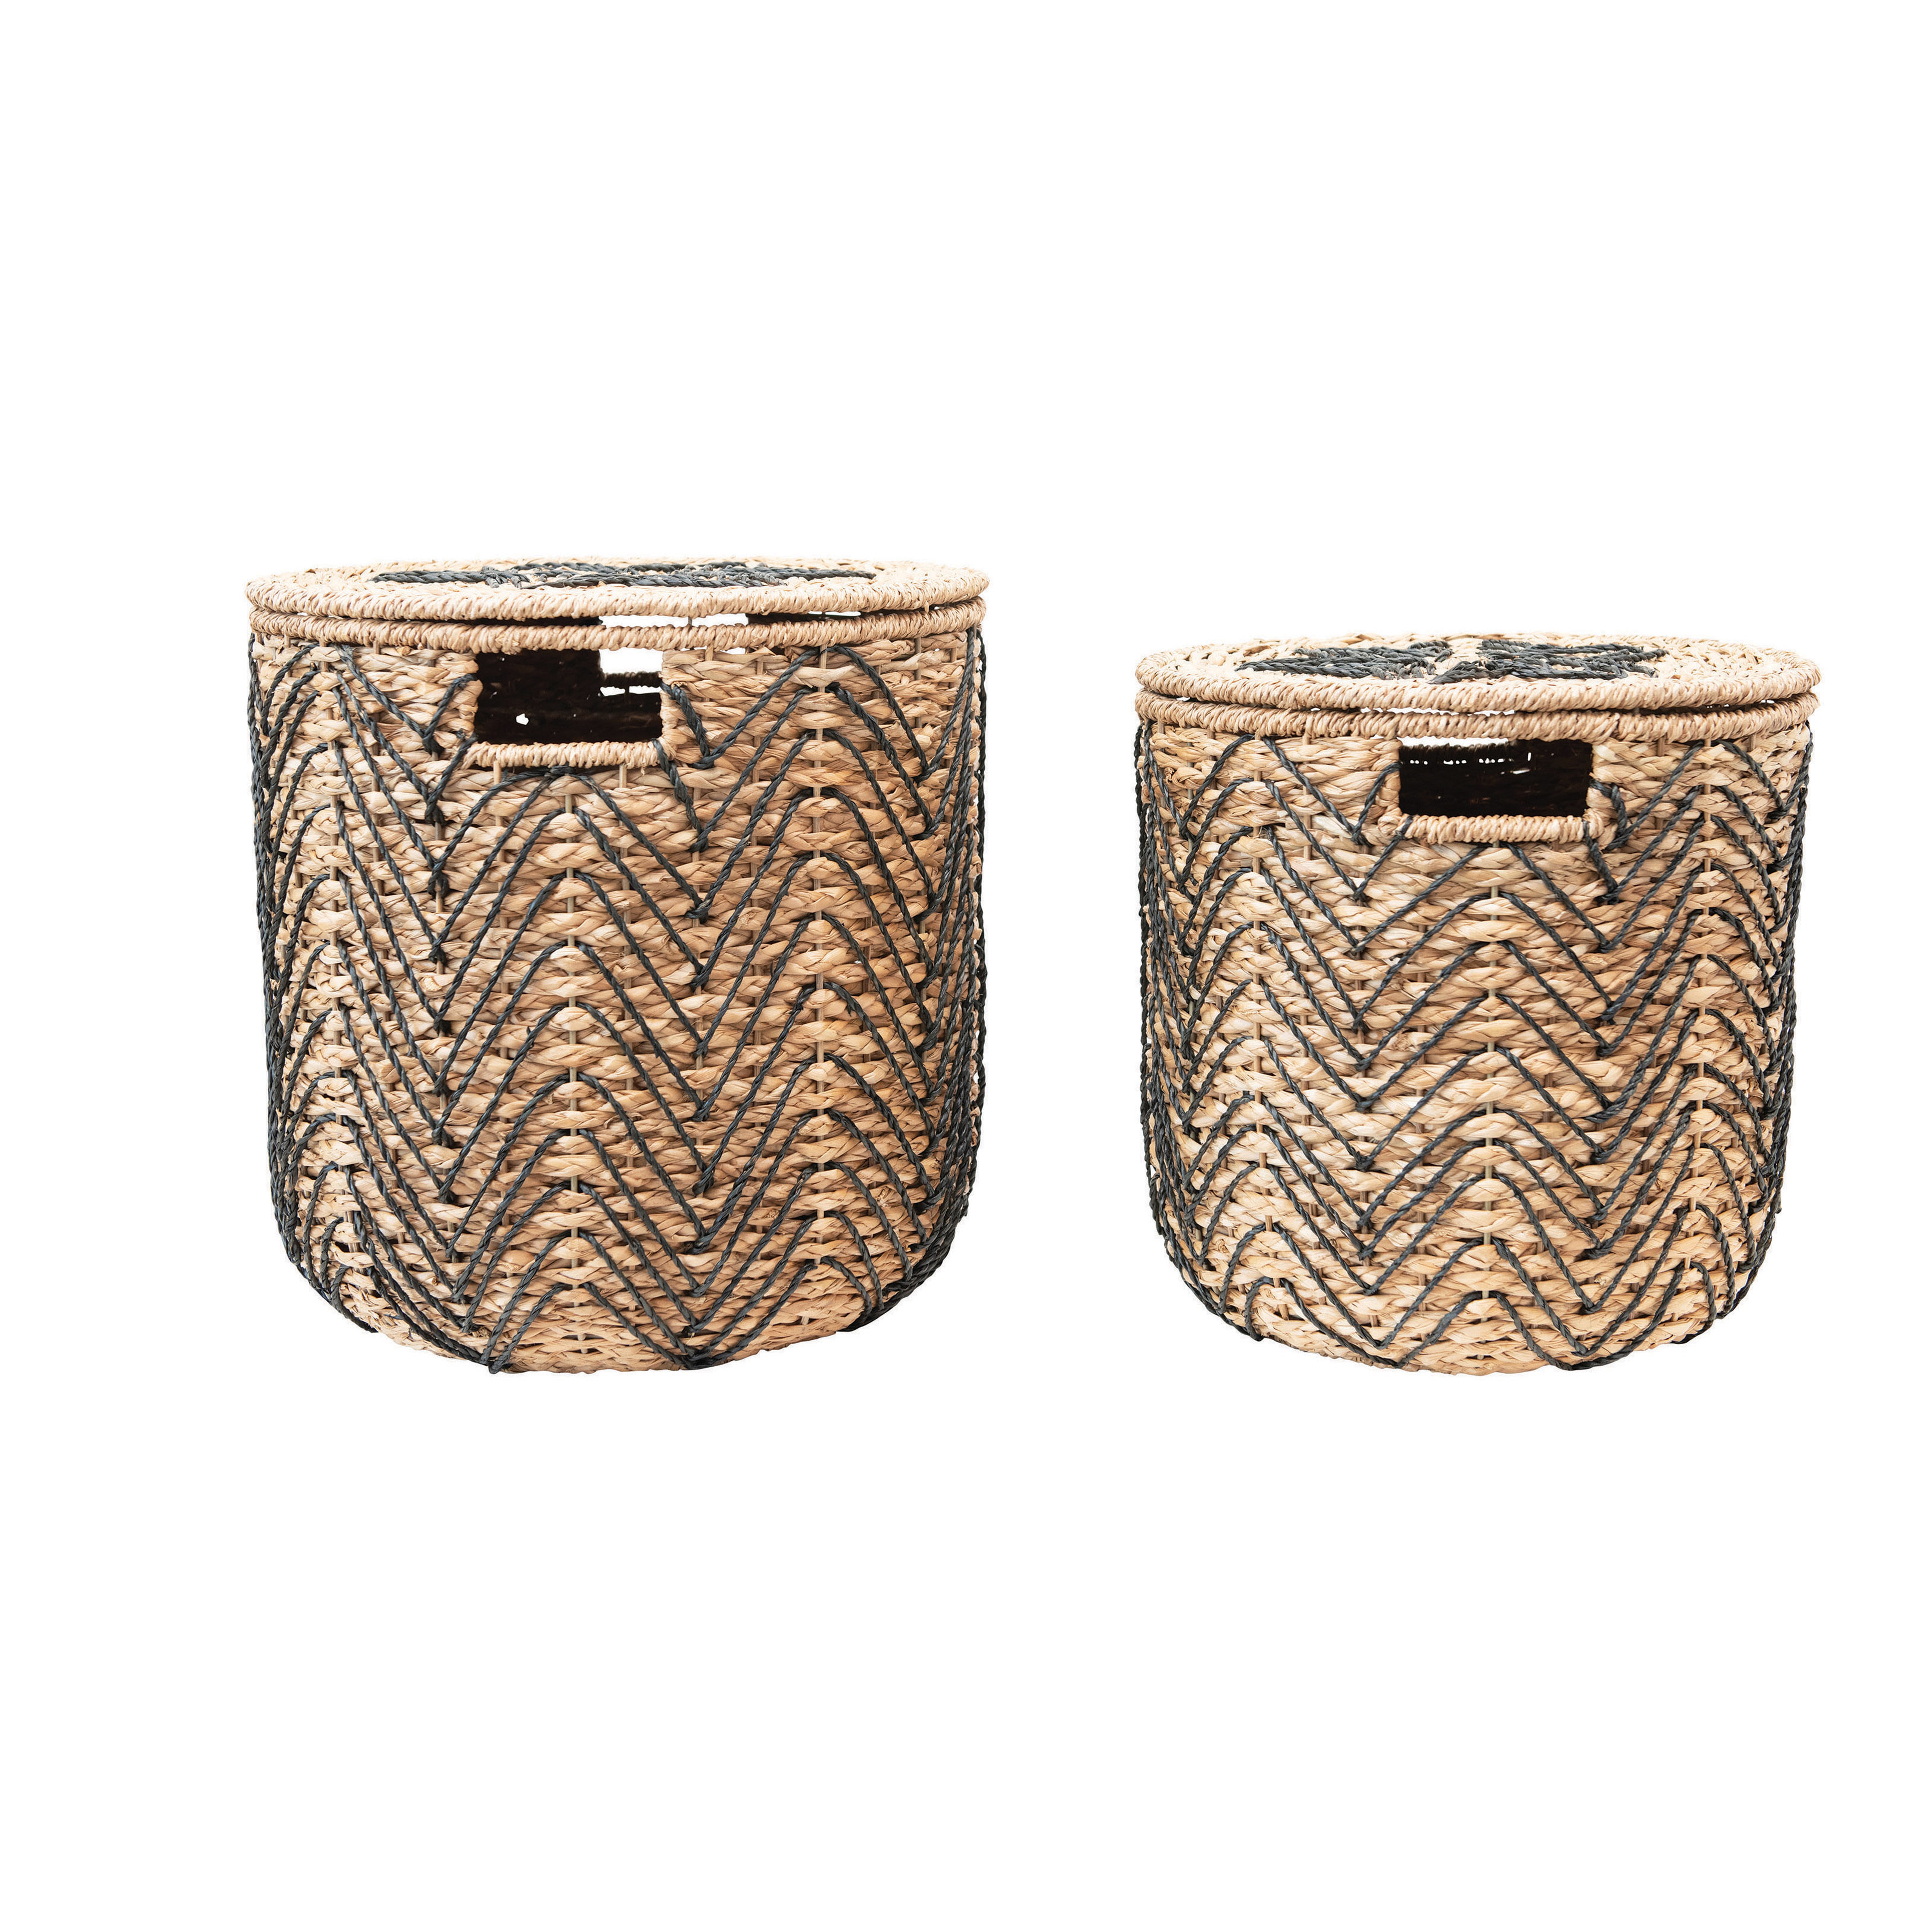 Handmade Woven Bankuan Baskets with Lids, Natural & Black, Set of 2 - Moss & Wilder